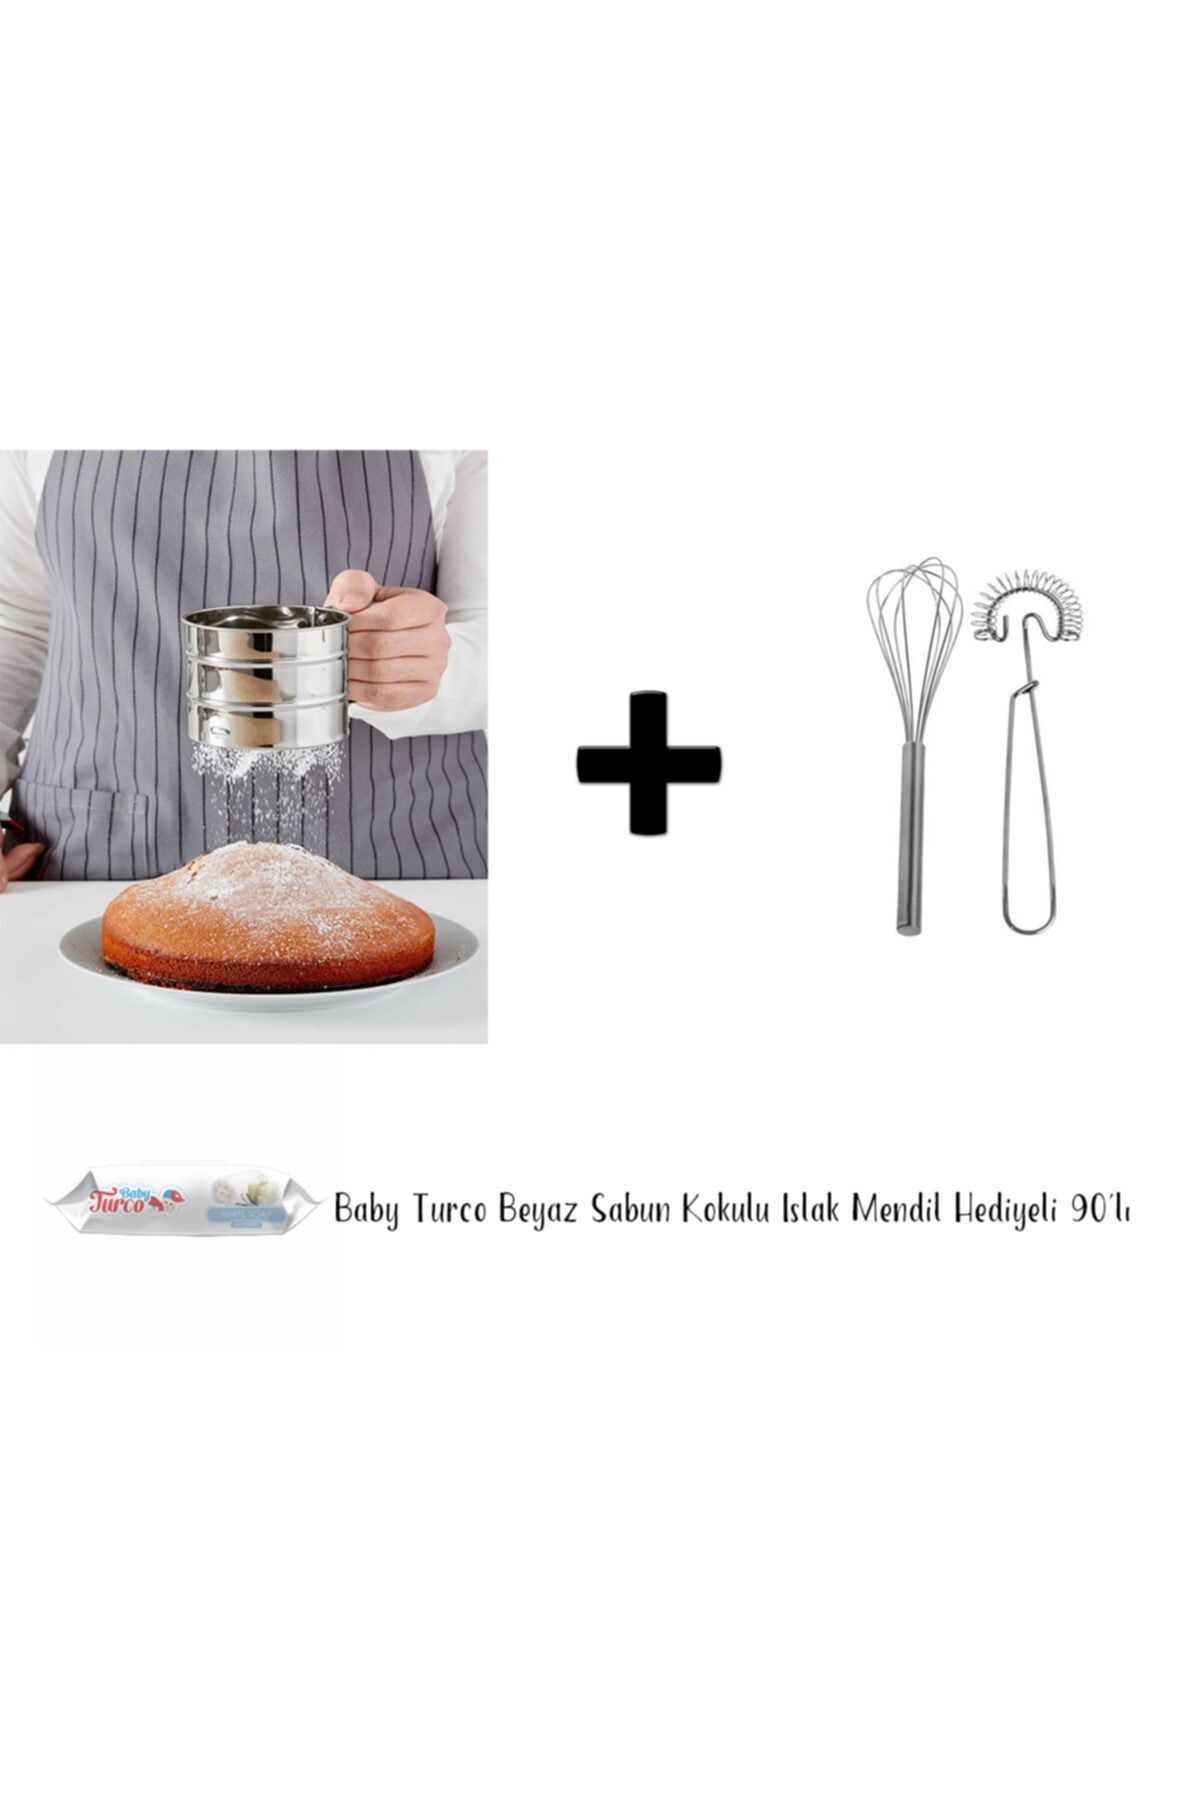 IKEA Idealısk Un Eleği + 2 Parça Paslanmaz Çelik Çırpıcı Seti - Baby Turco Islak Mendil Hediyeli